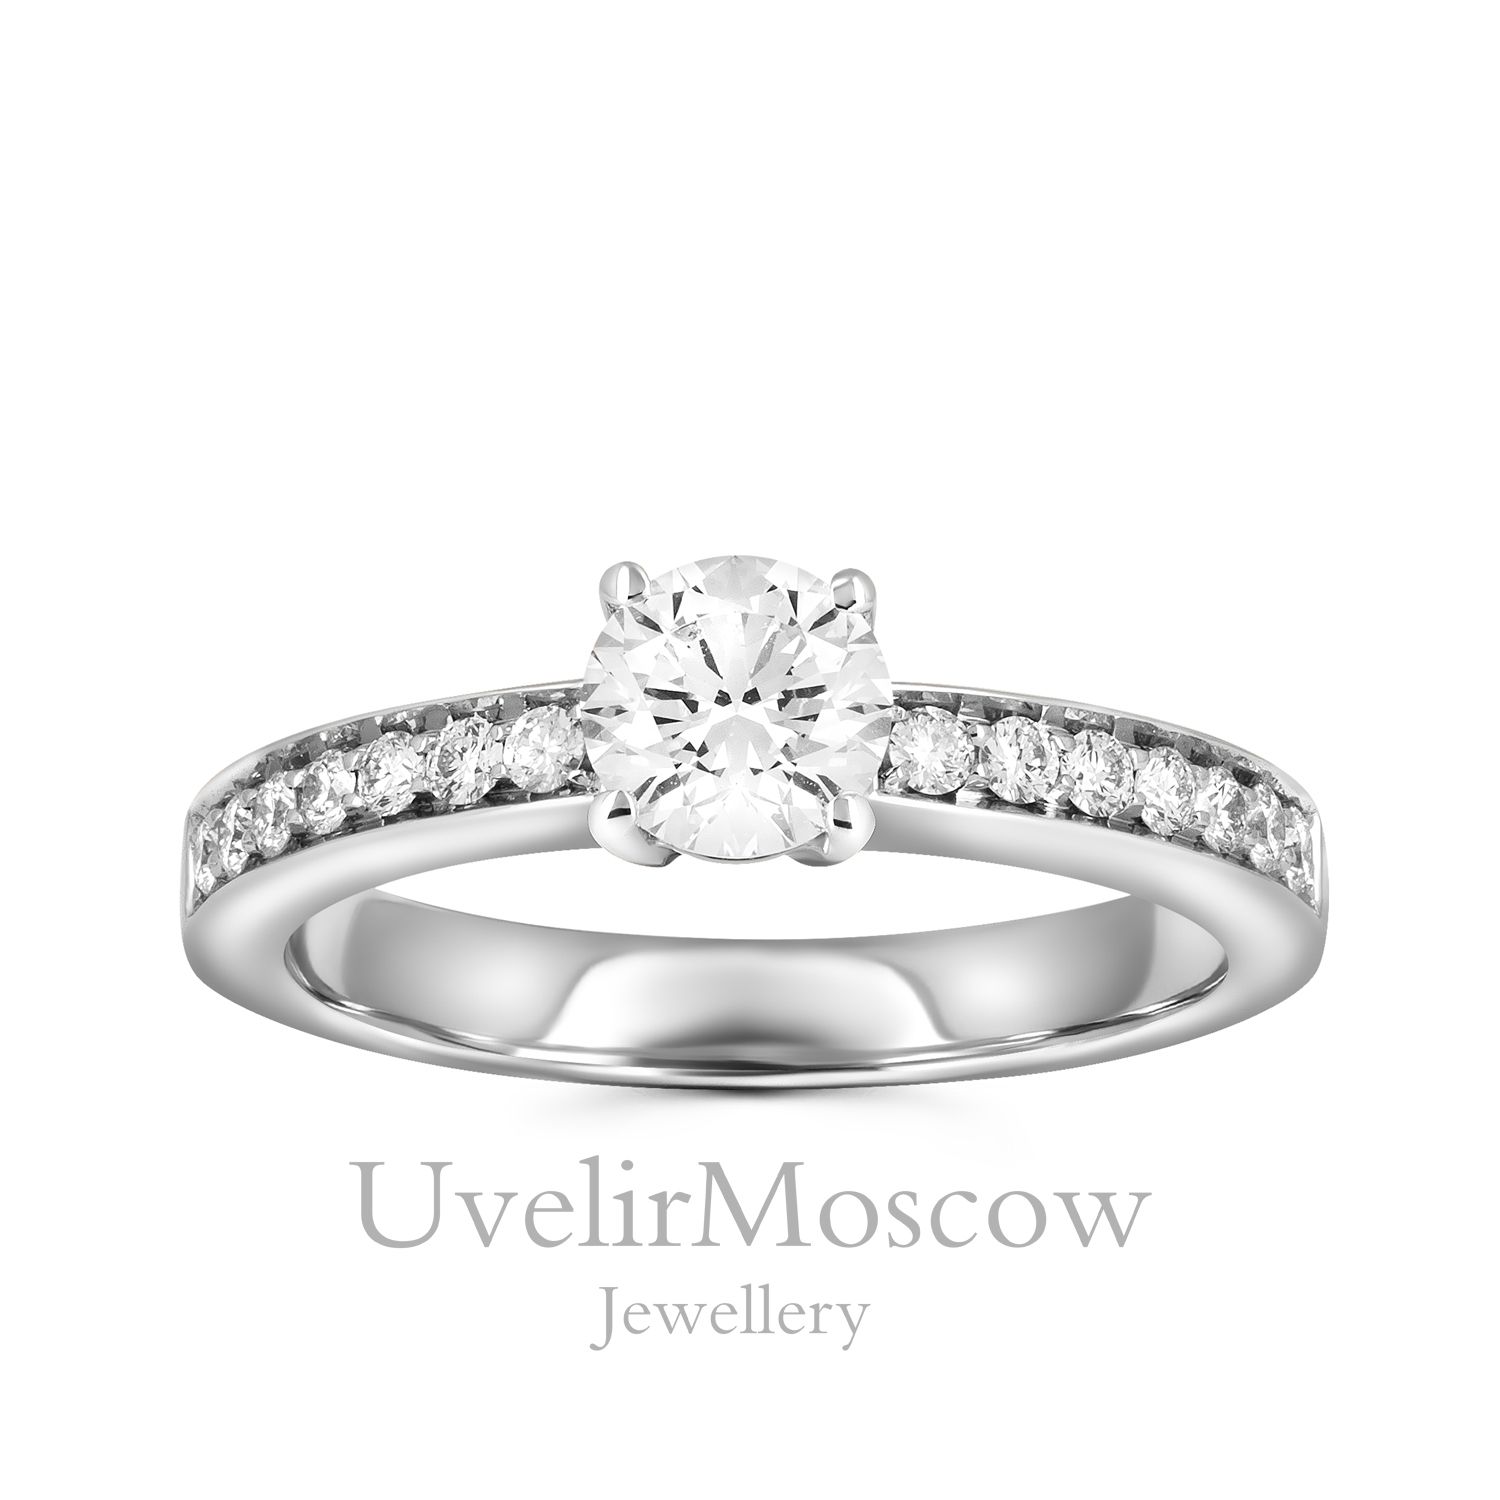 Нежное помолвочное кольцо с бриллиантовой дорожкой